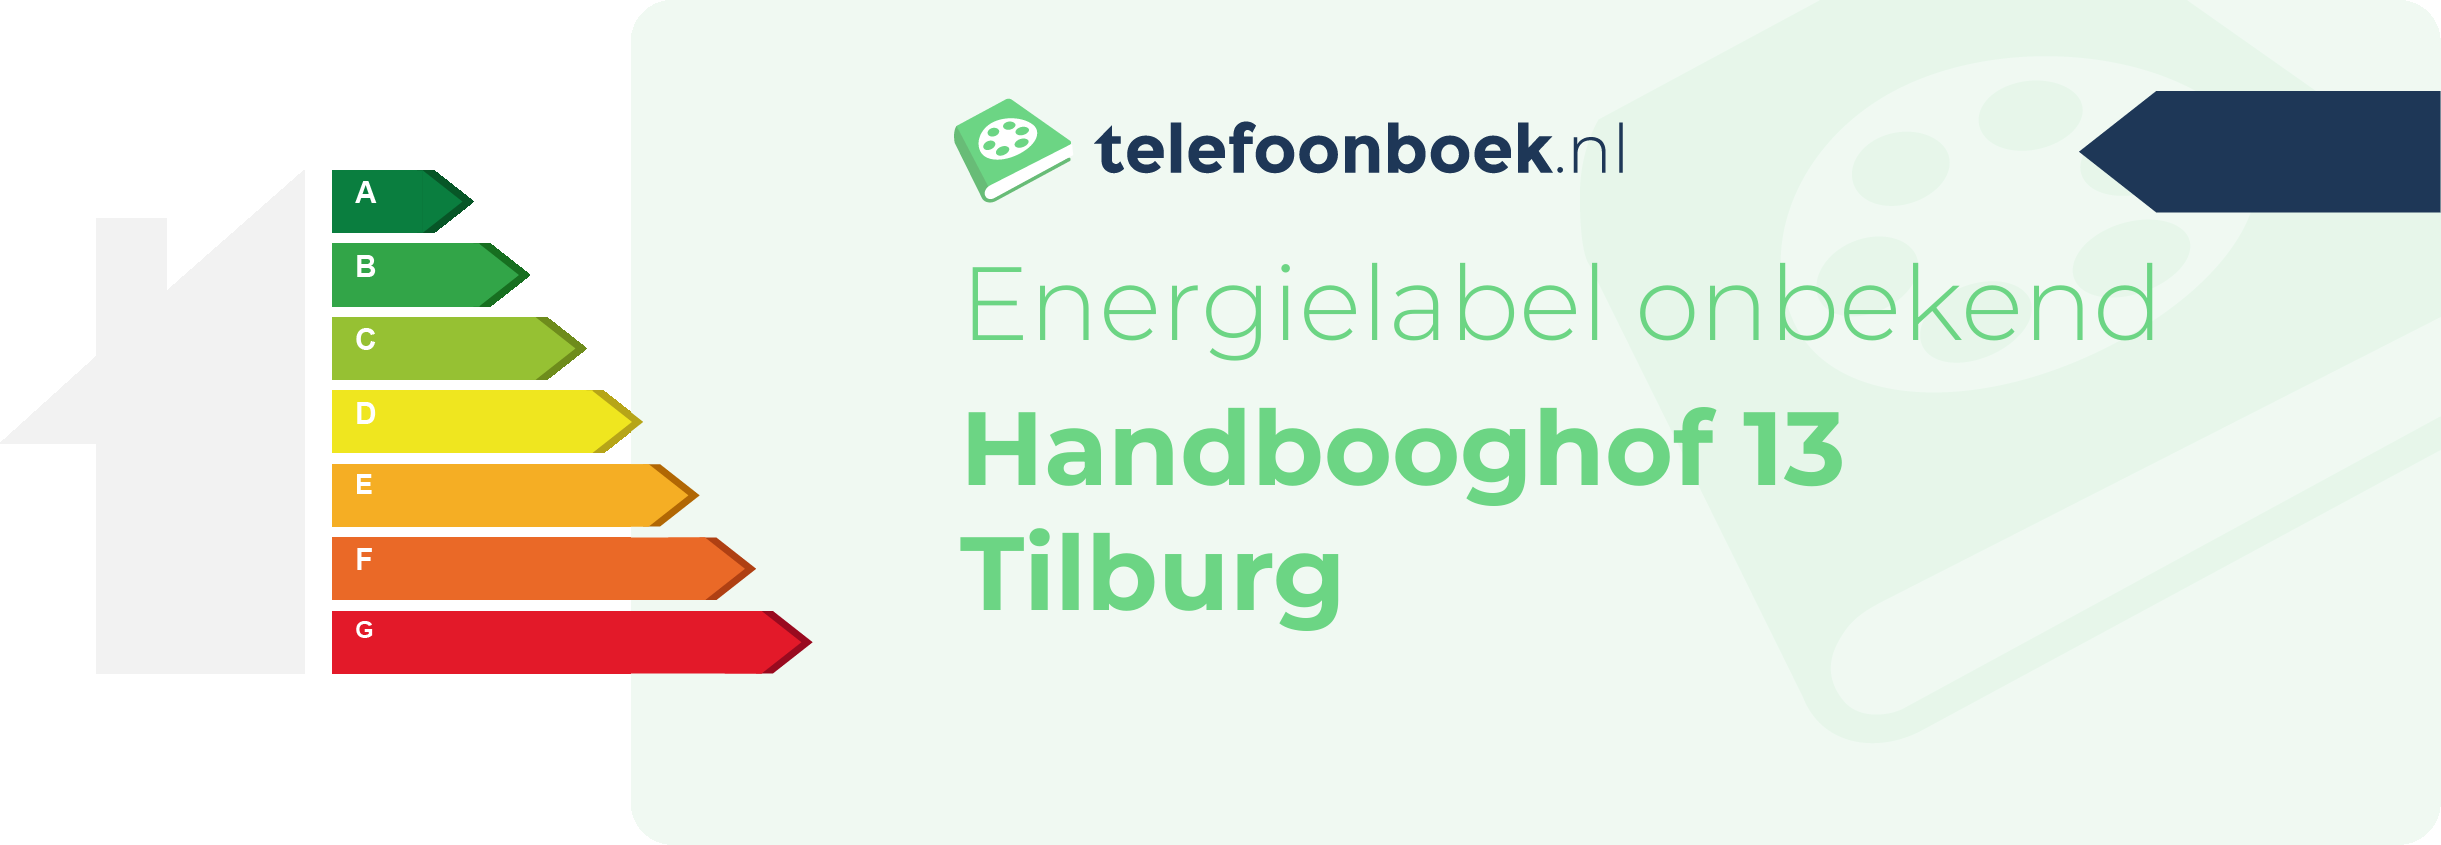 Energielabel Handbooghof 13 Tilburg